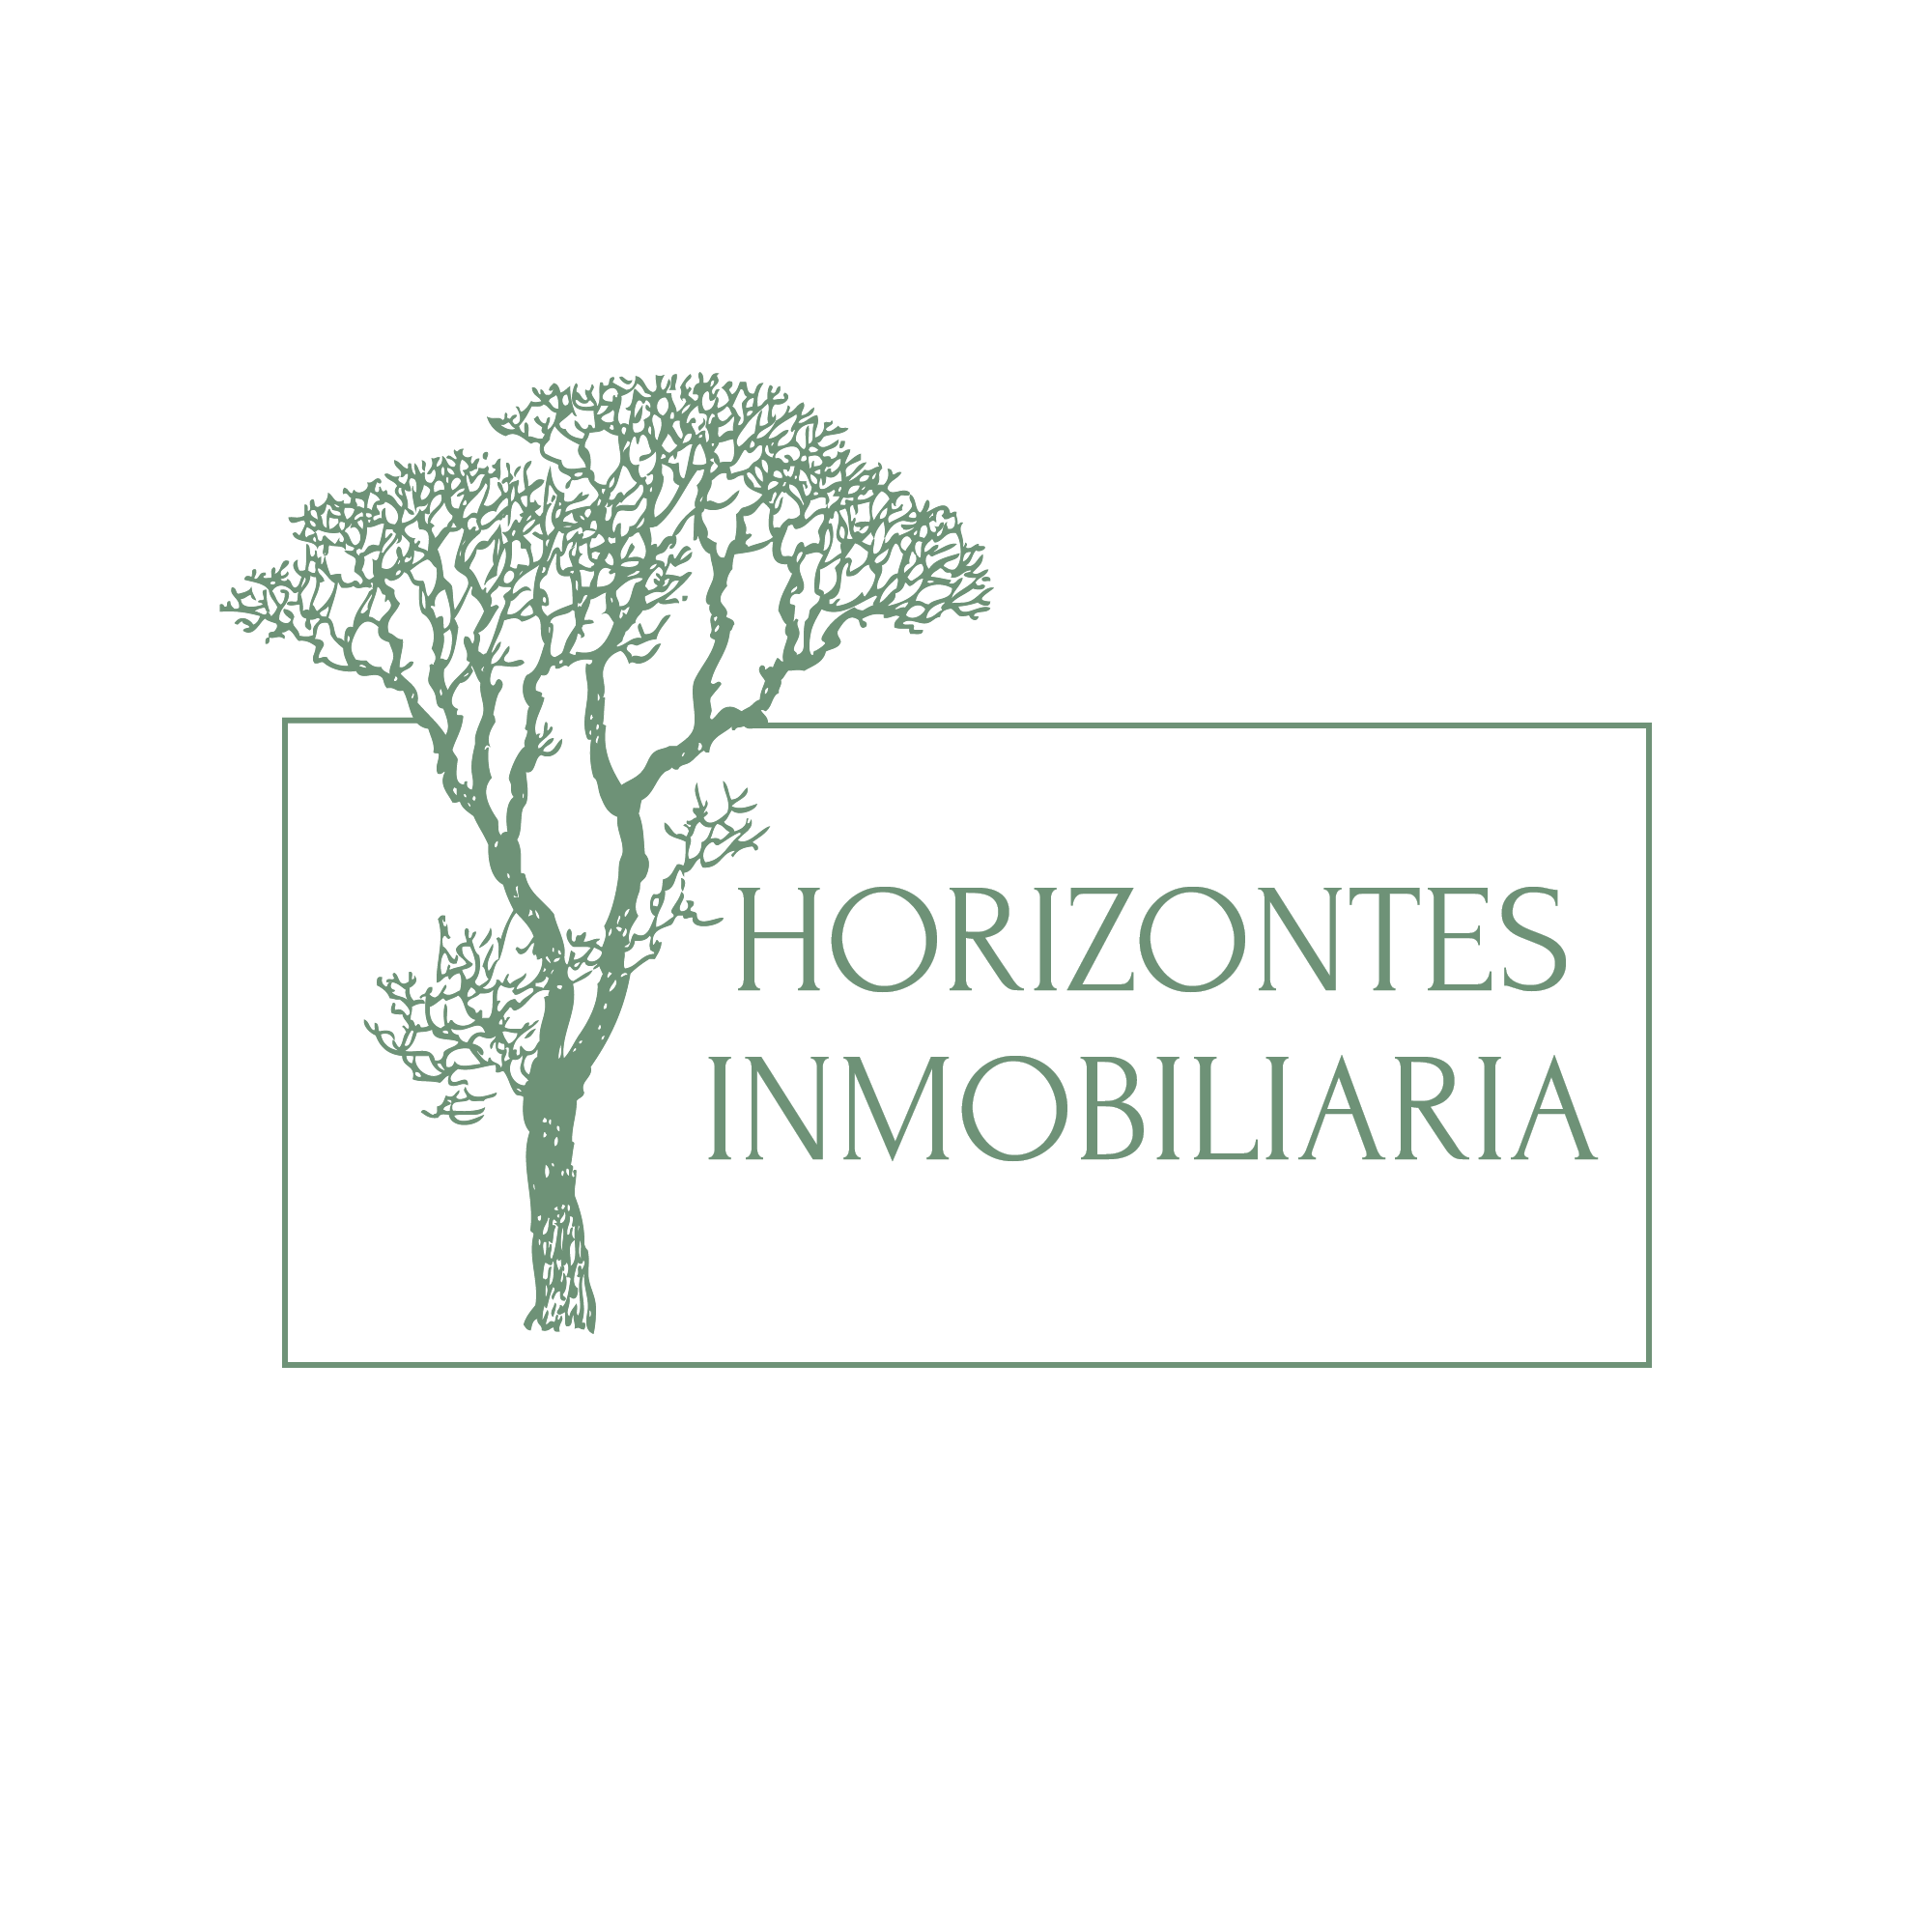 Inmobiliaria Horizontes logo